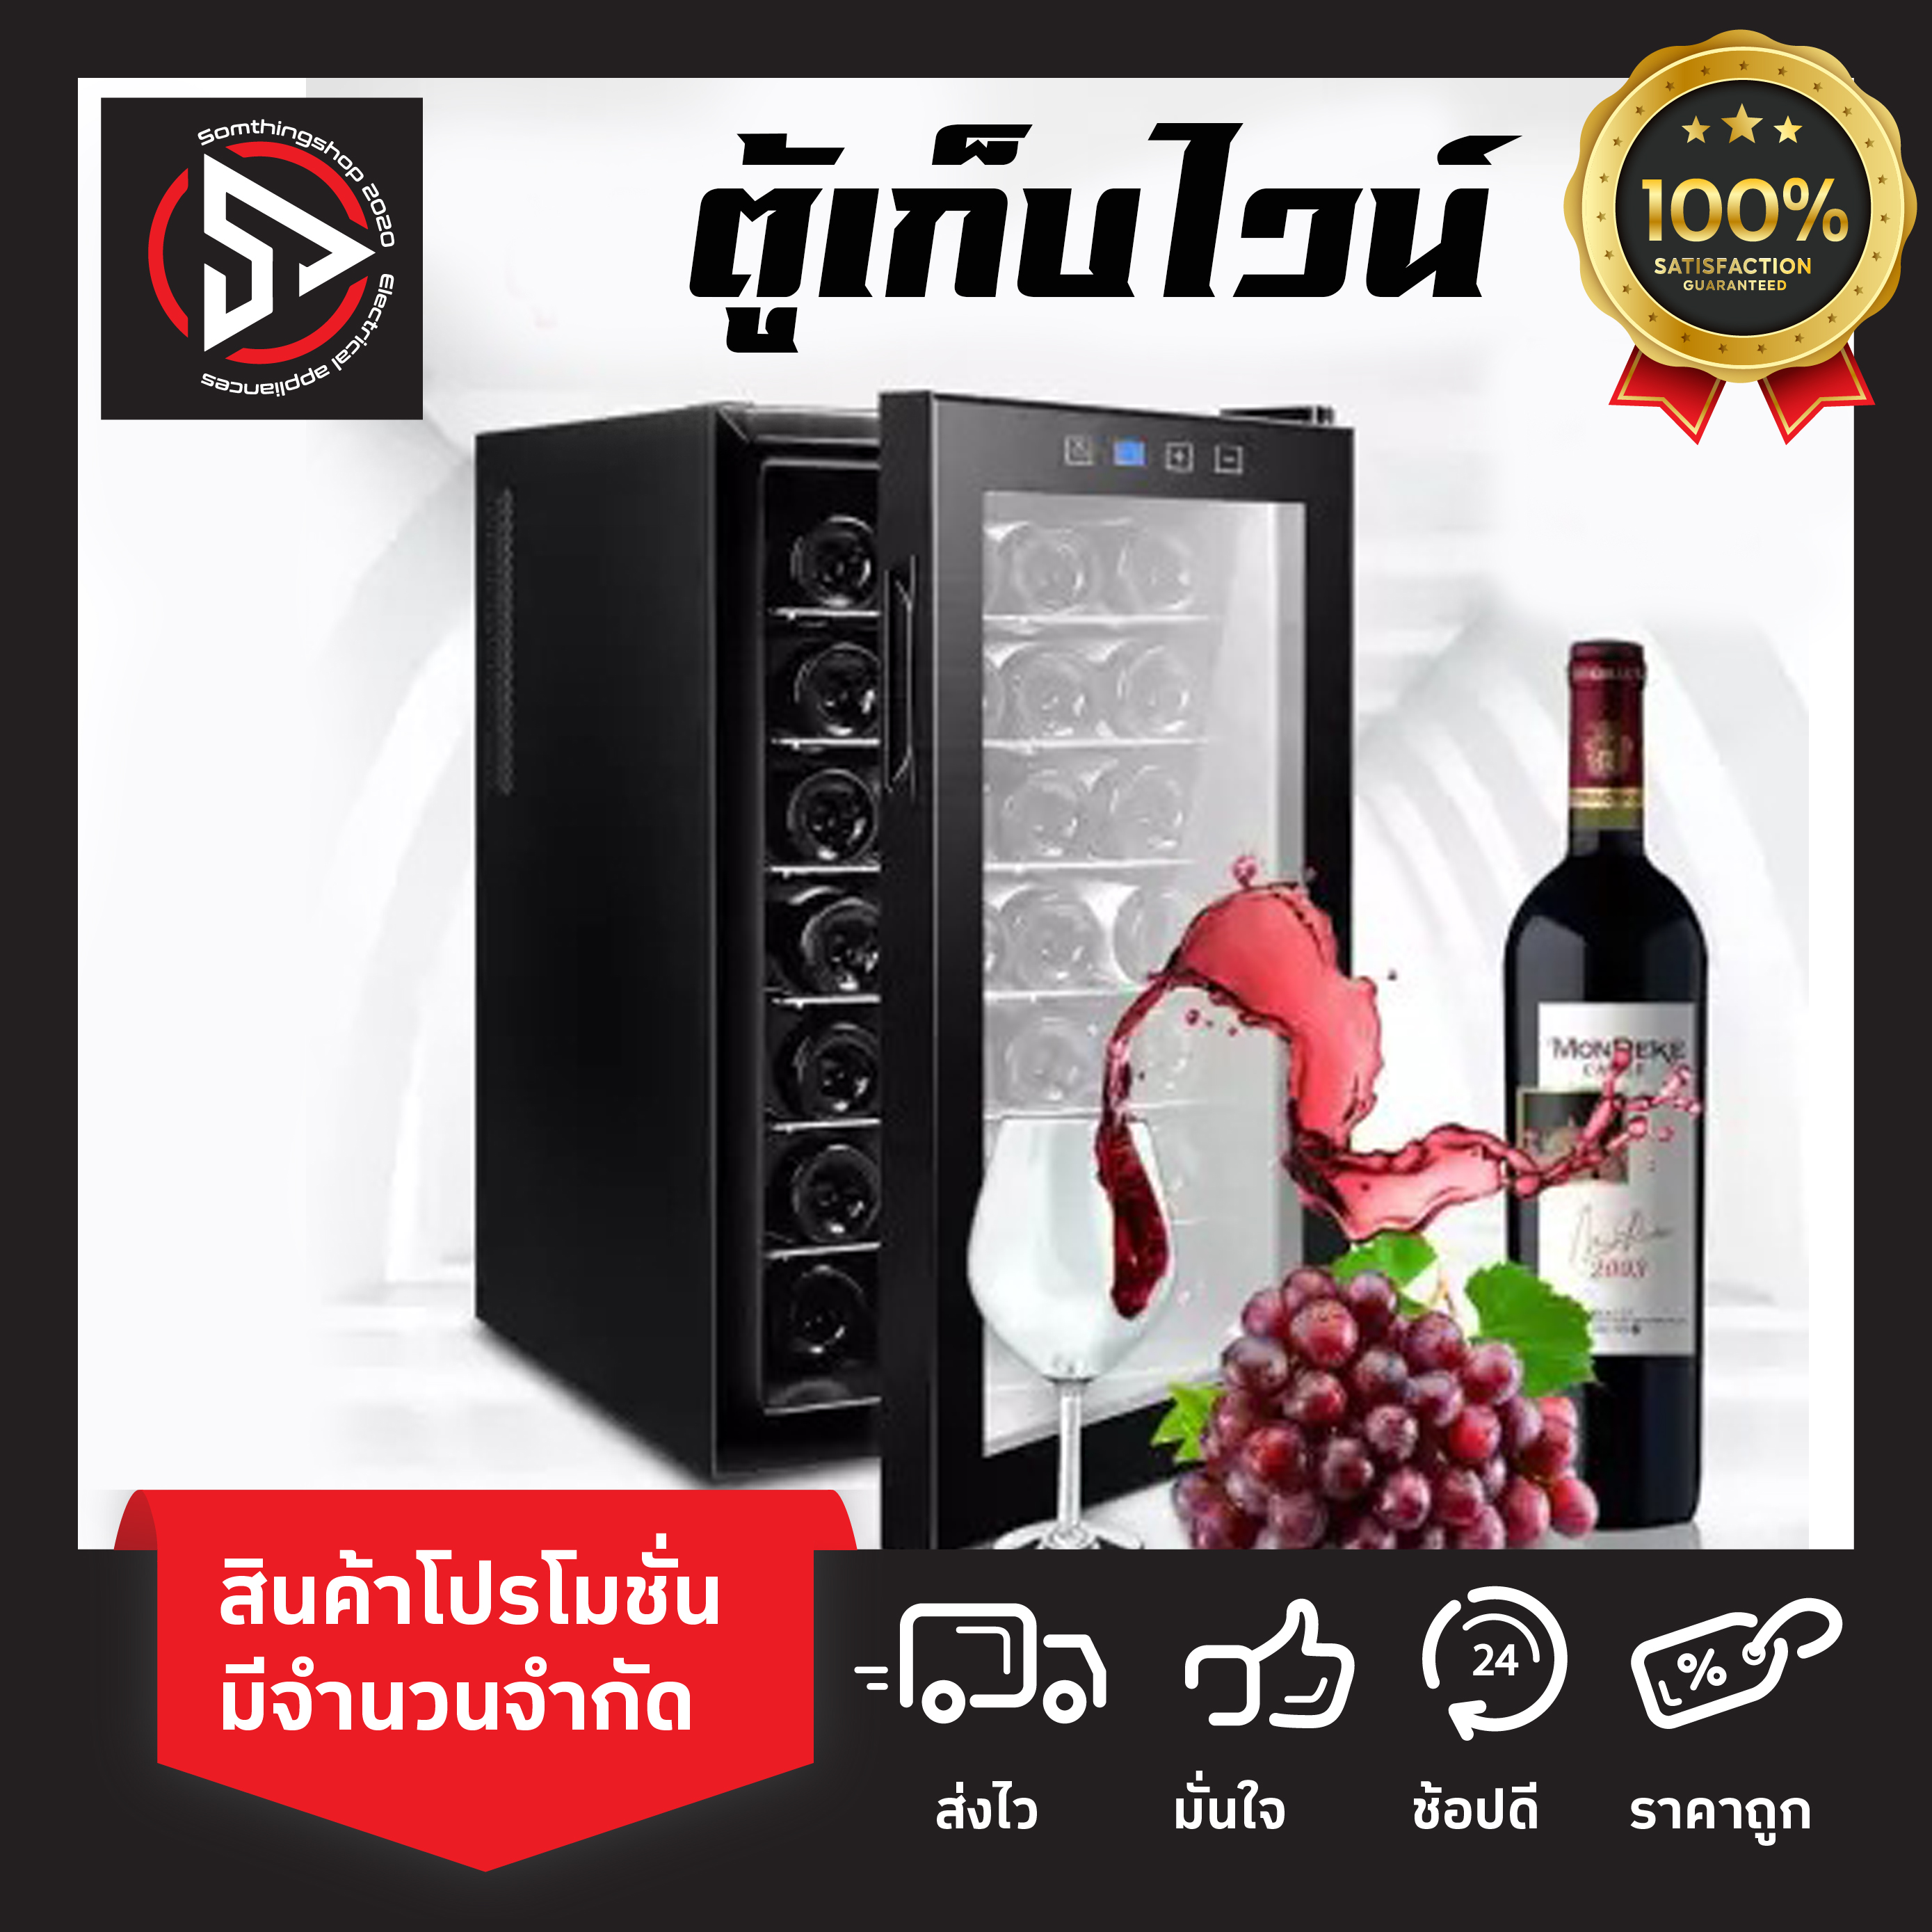 Wine cabinet ตู้เก็บไวน์ ตู้ไวน์ ตู้เก็บไวน์อุณหภูมิคงที่ สามารถเก็บได้ 18 ขวด